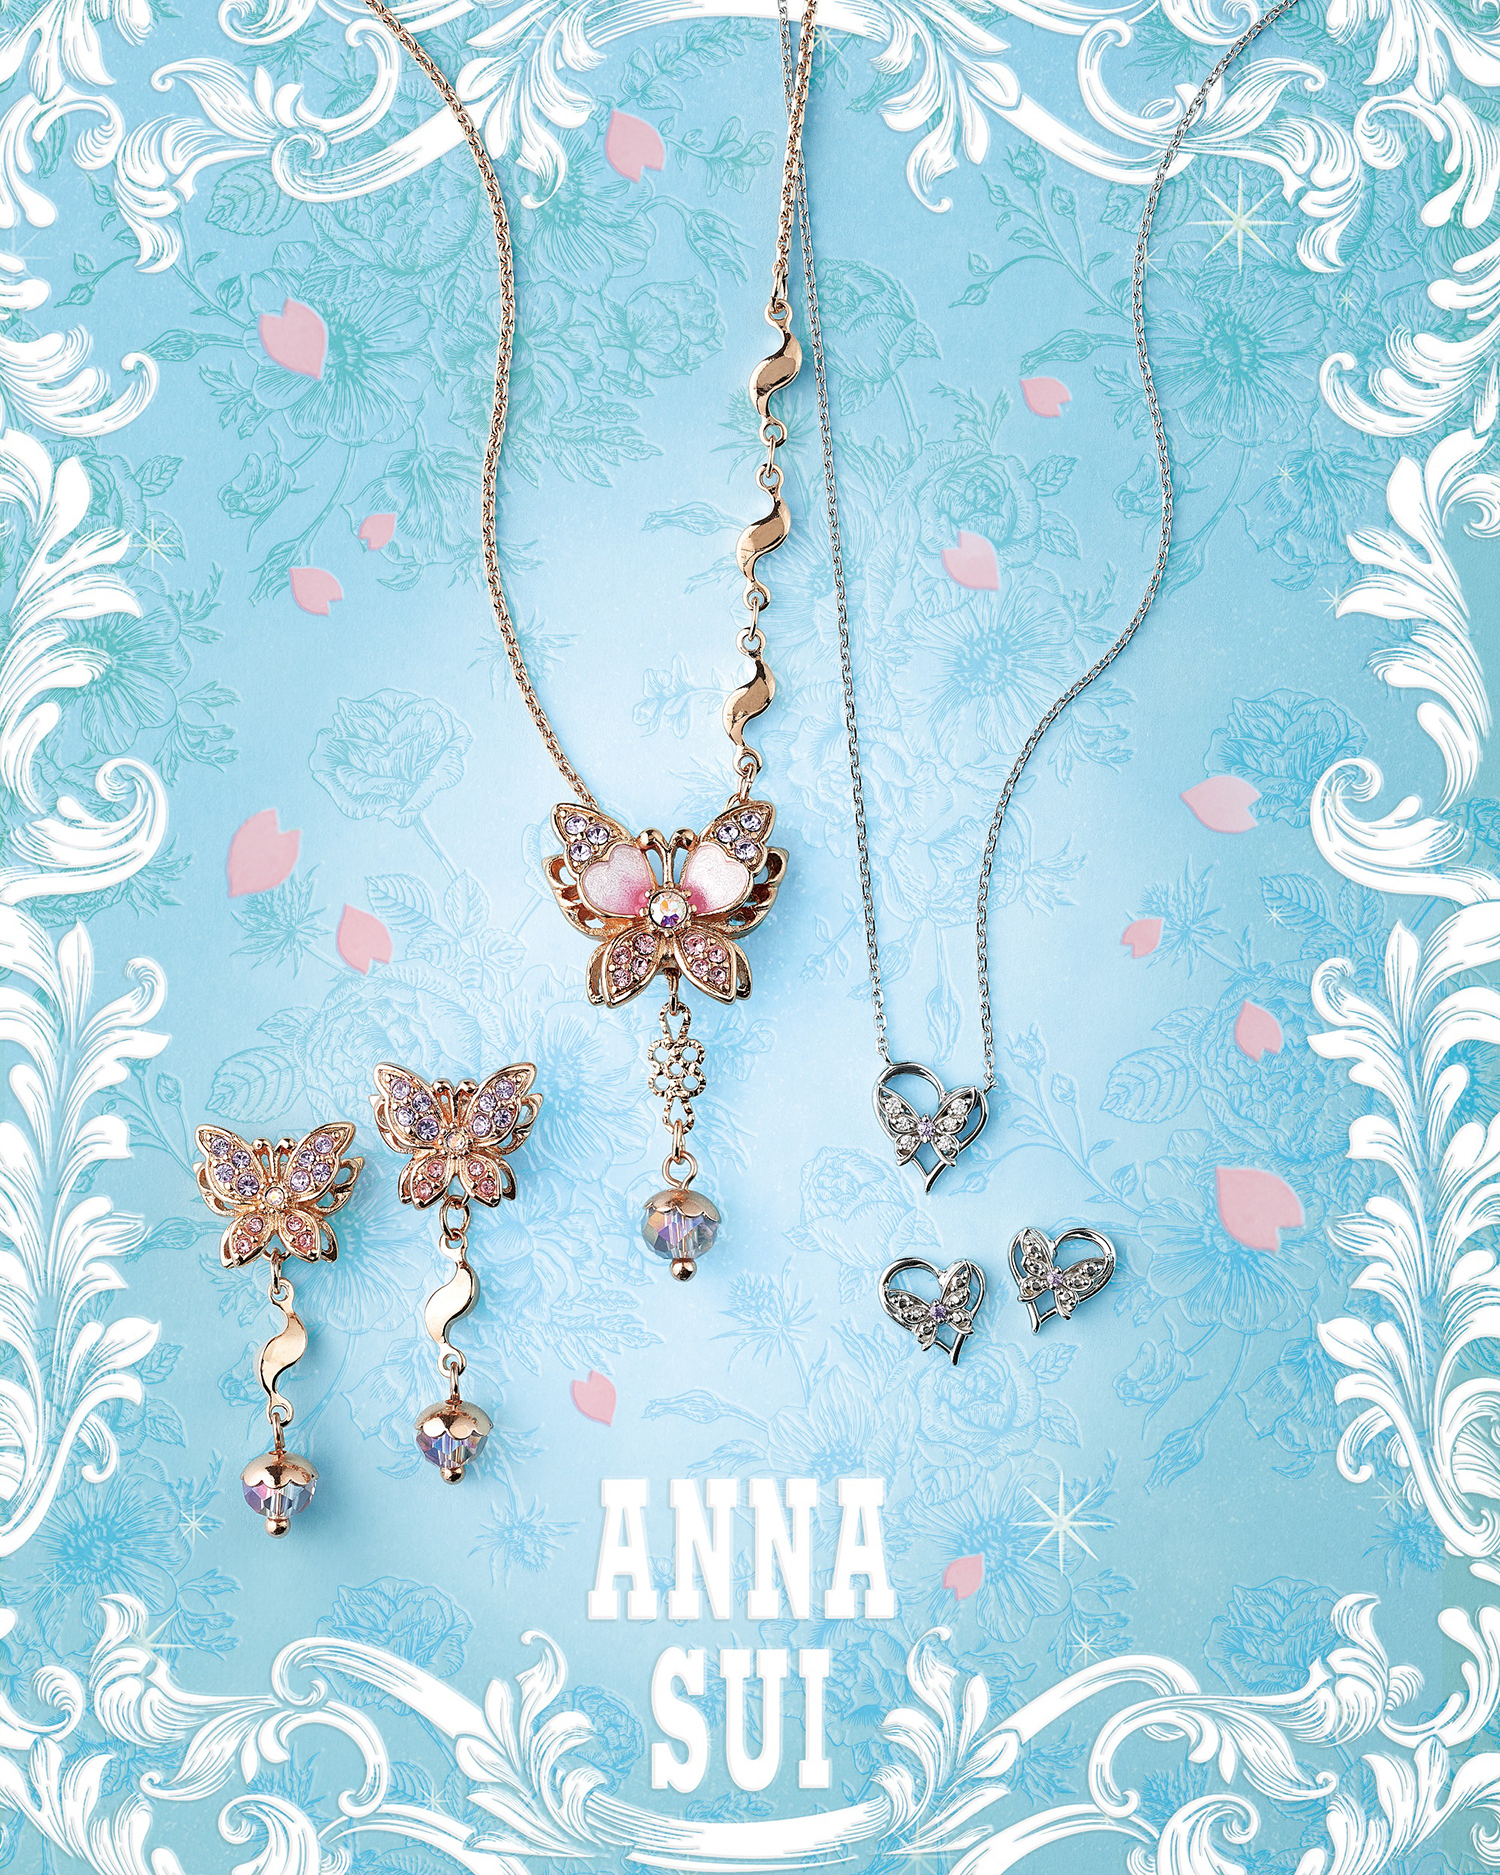 ANNA SUI(アナ スイ)、幸運を運ぶ“蝶”をモチーフにした新作 ...